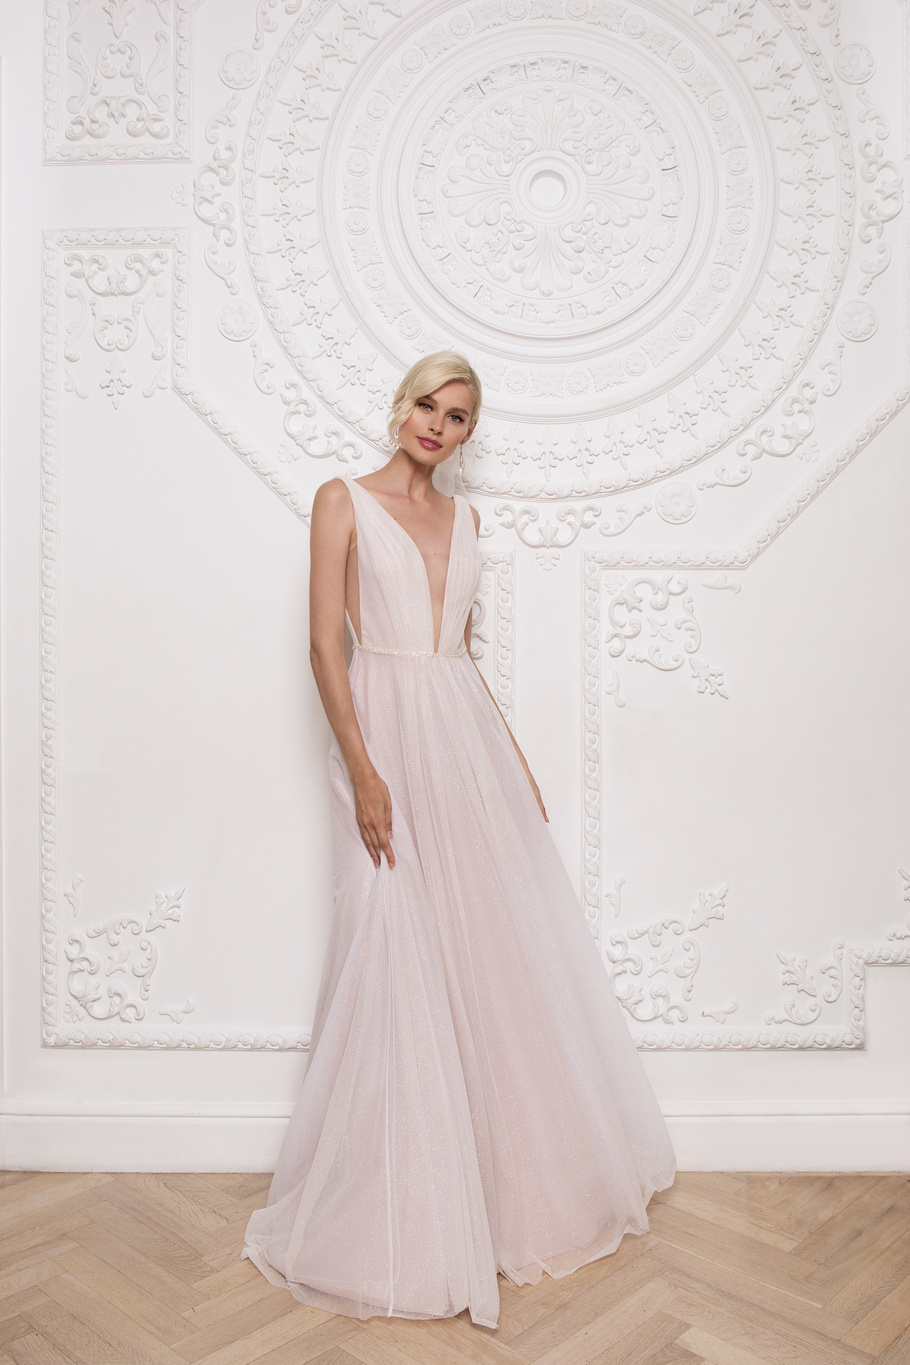 Купить свадебное платье «Джефина» Мэрри Марк из коллекции 2020 года в Нижнем Новгороде